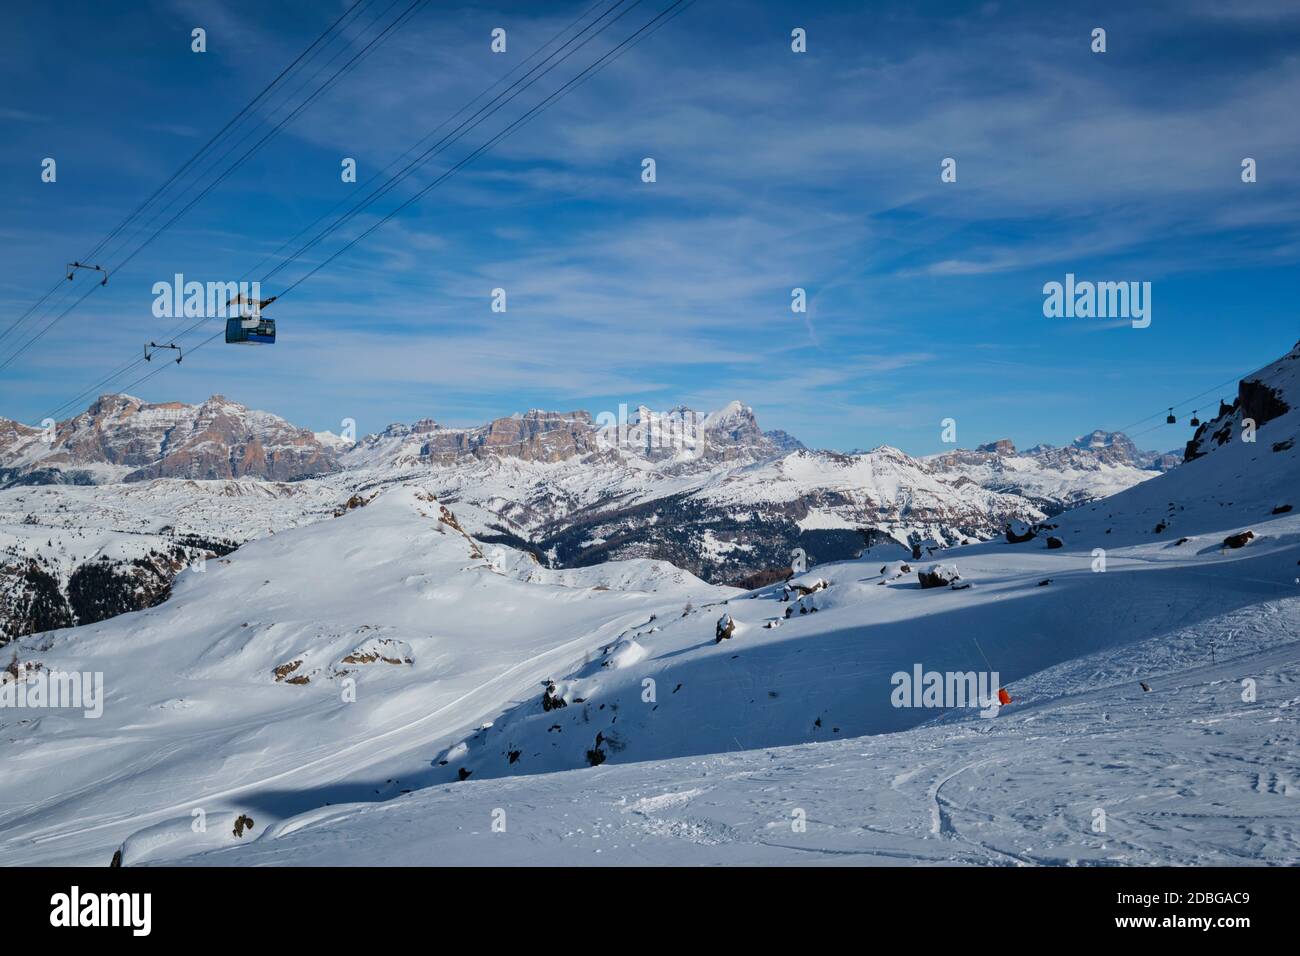 Vue sur une station de ski avec des personnes qui skient dans les Dolomites en Italie avec télécabine. Domaine skiable Arabba. Arabba, Italie Banque D'Images